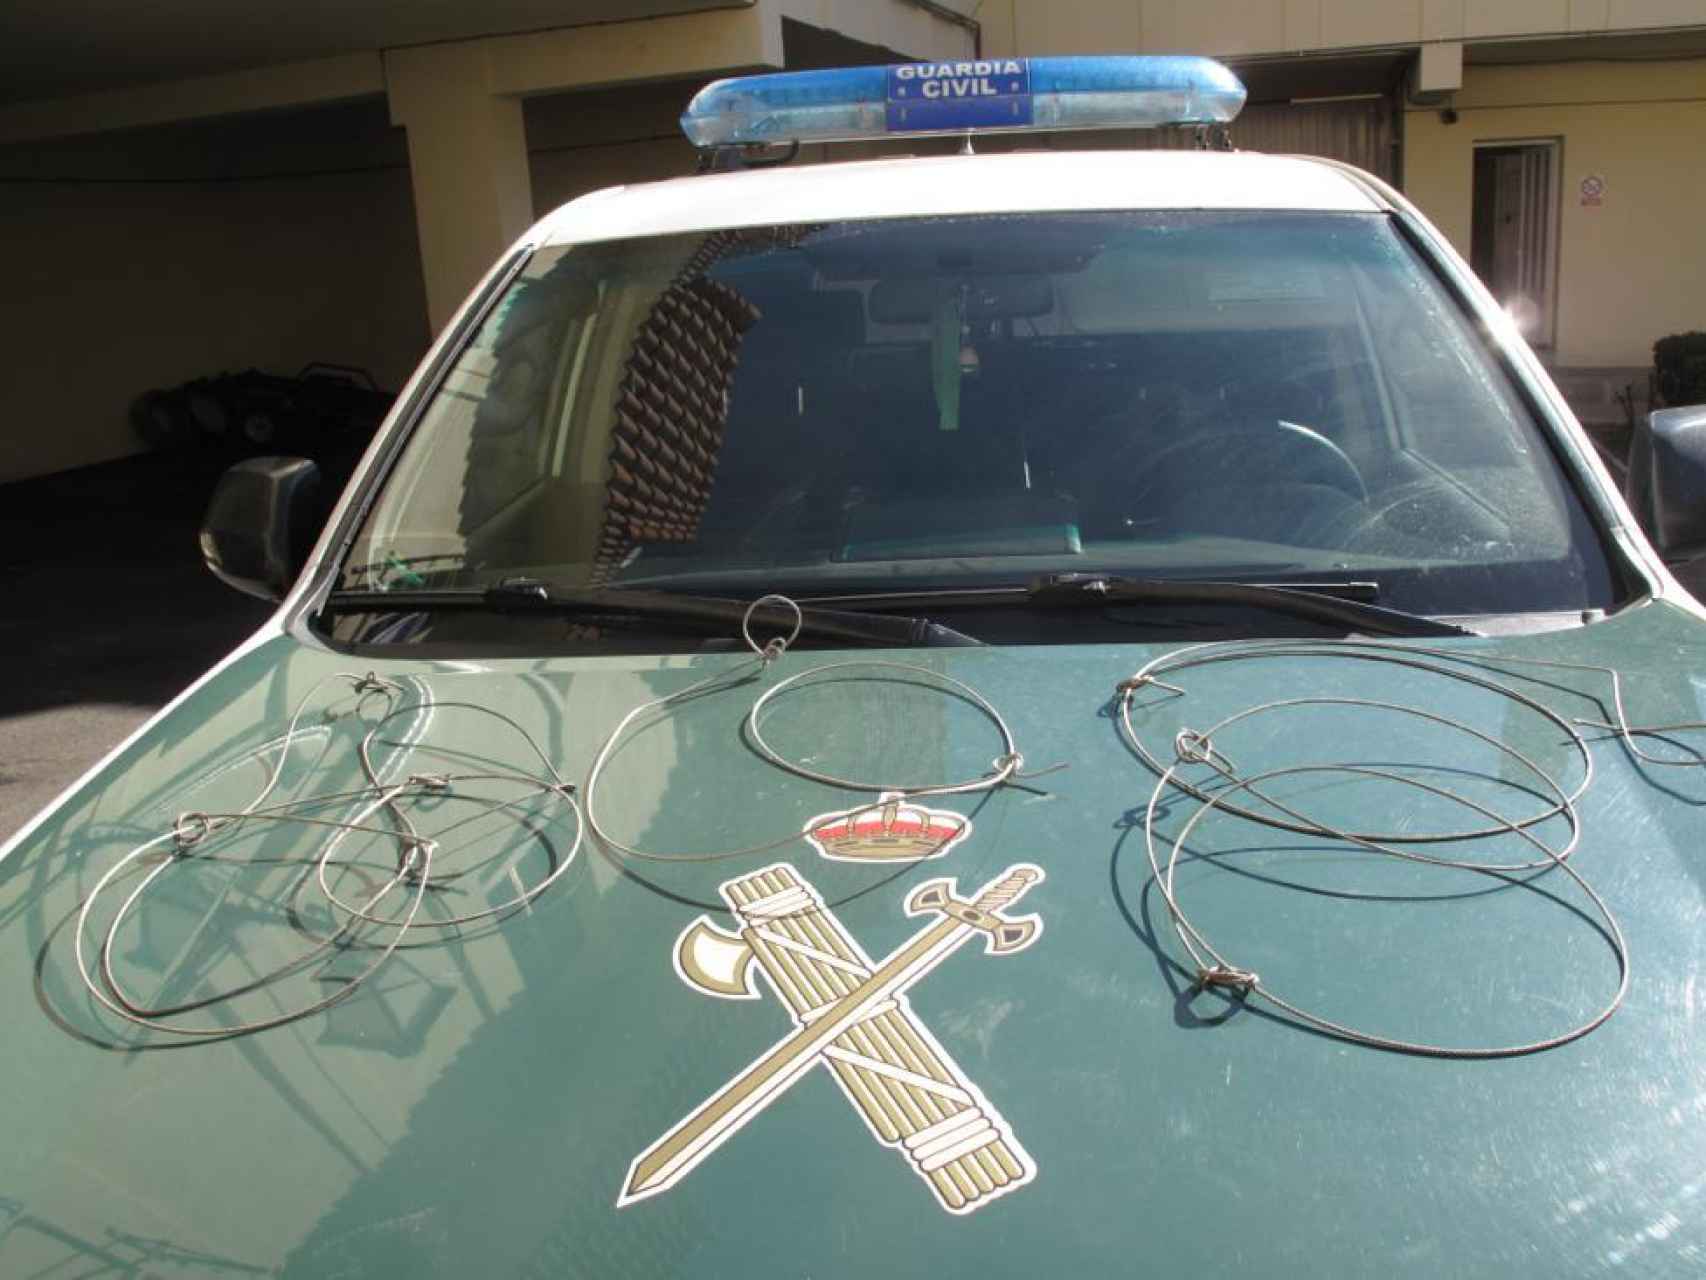 Imagen de los cables intervenidos por la Guardia Civil